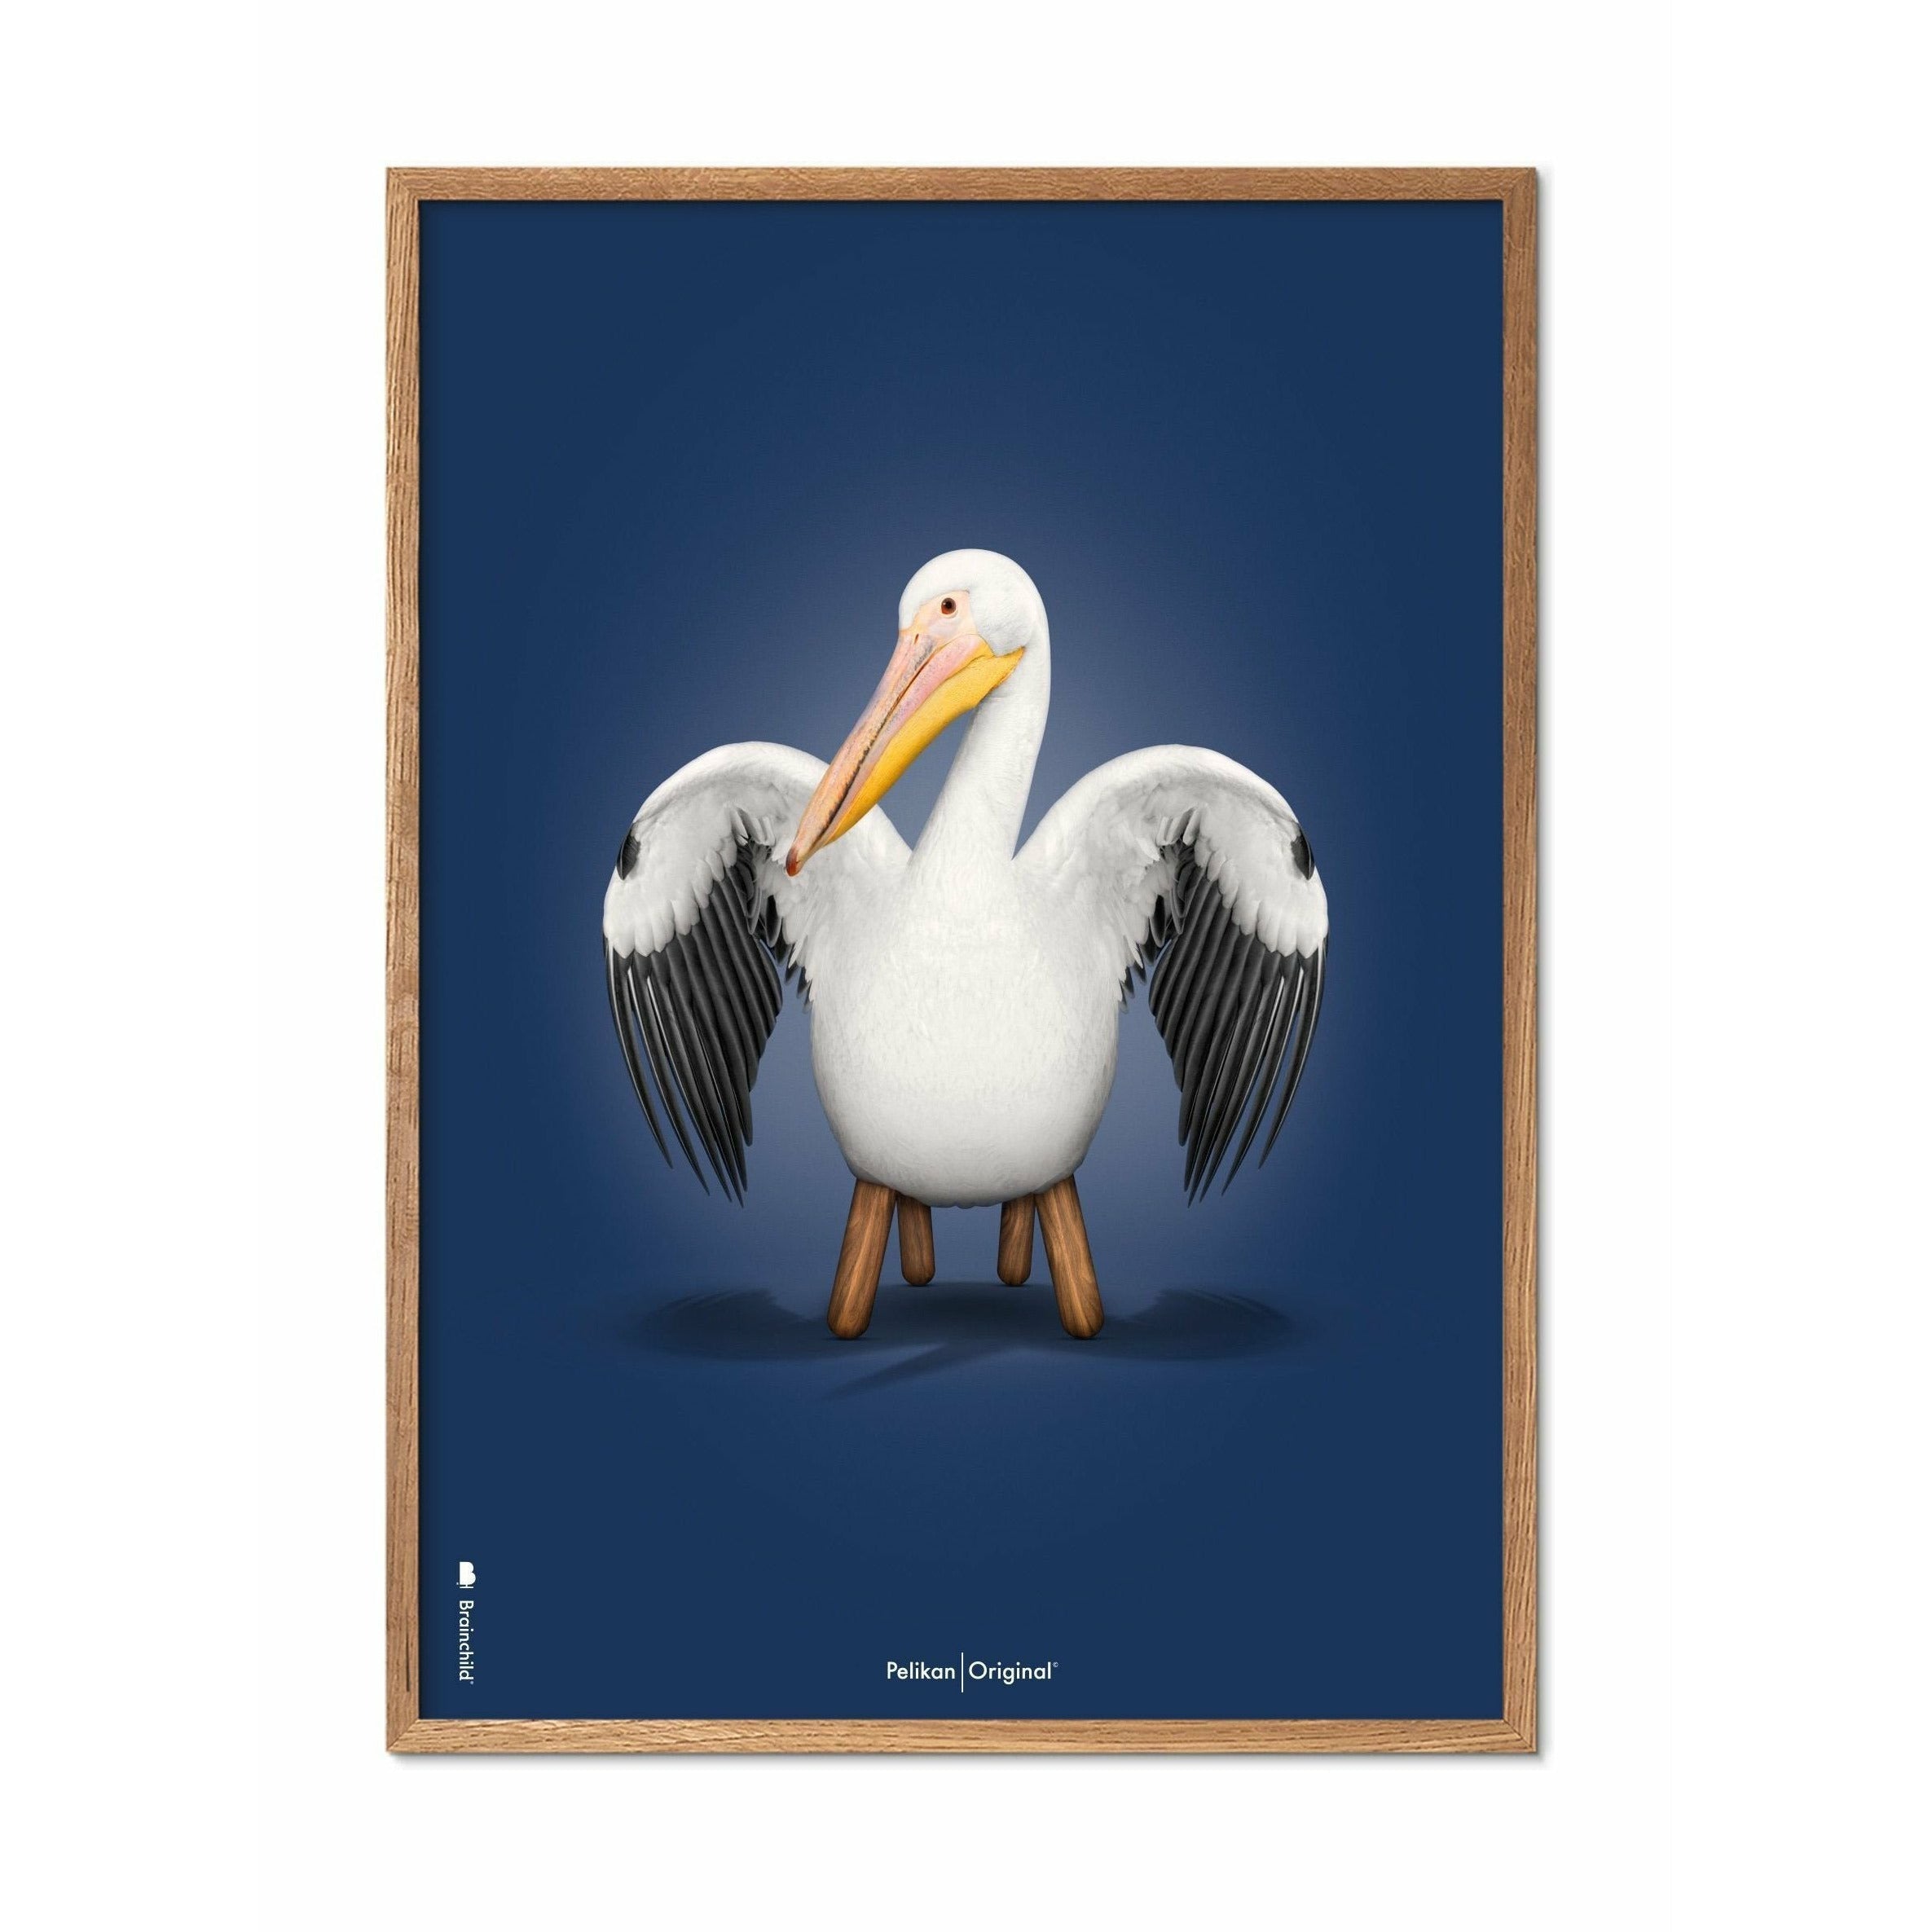 brainchild Poster classique Pelikan, cadre en bois clair A5, fond bleu foncé